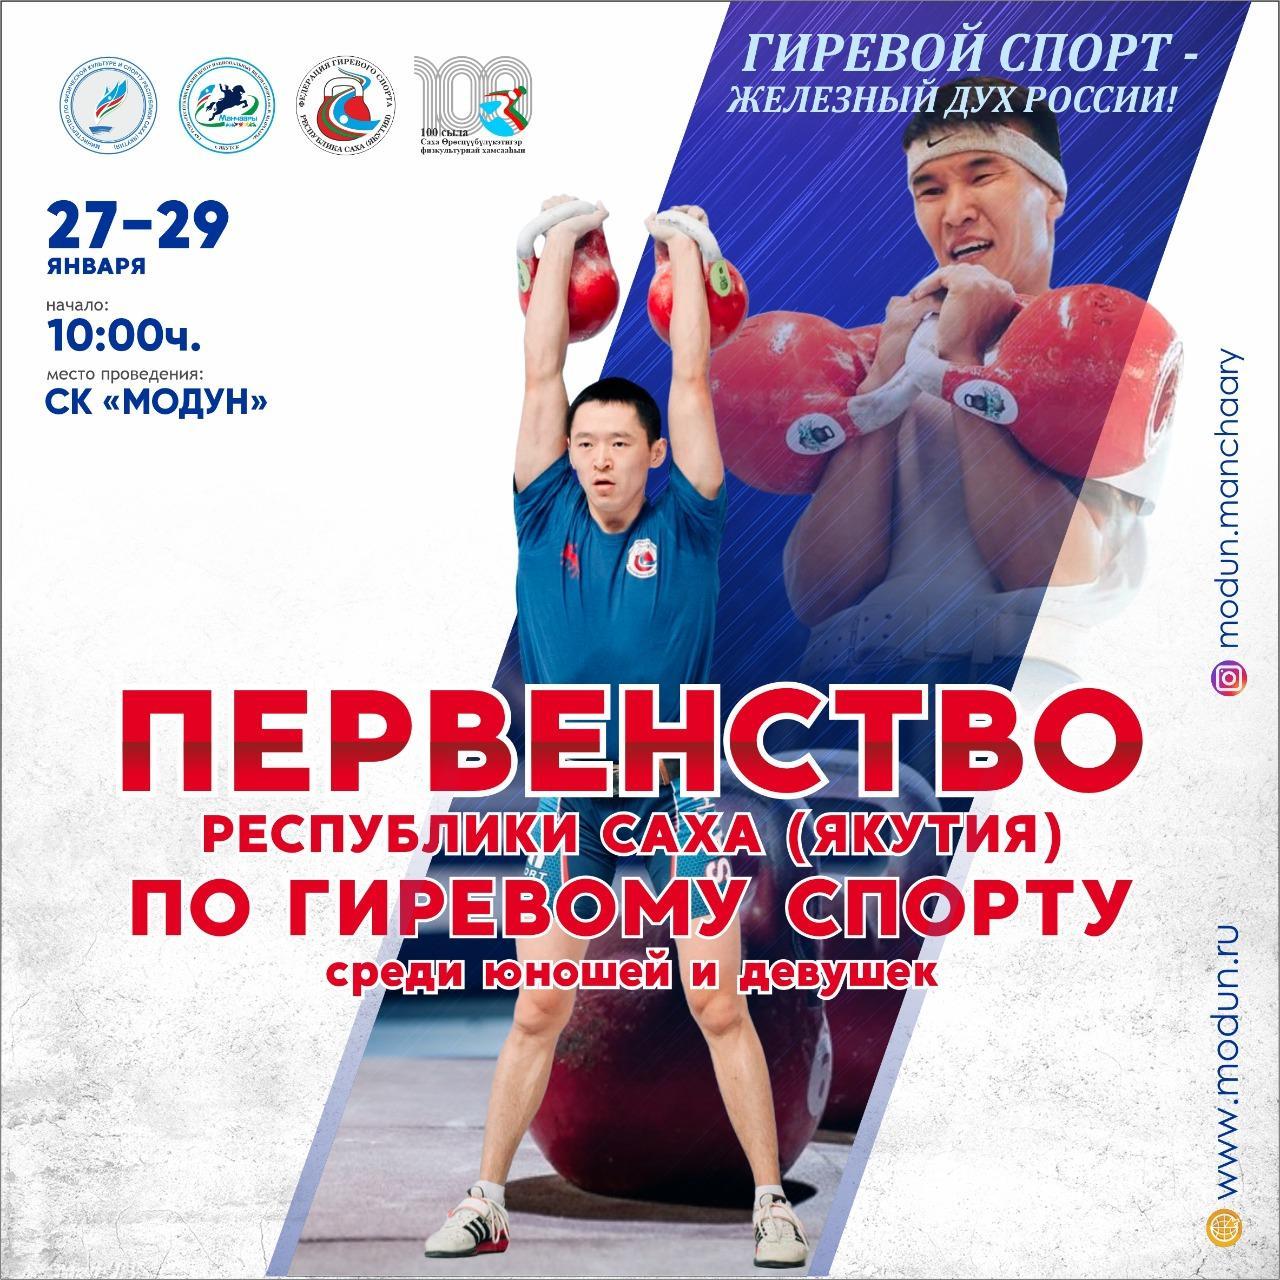 Первенство республики по гиревому спорту пройдет в Якутии